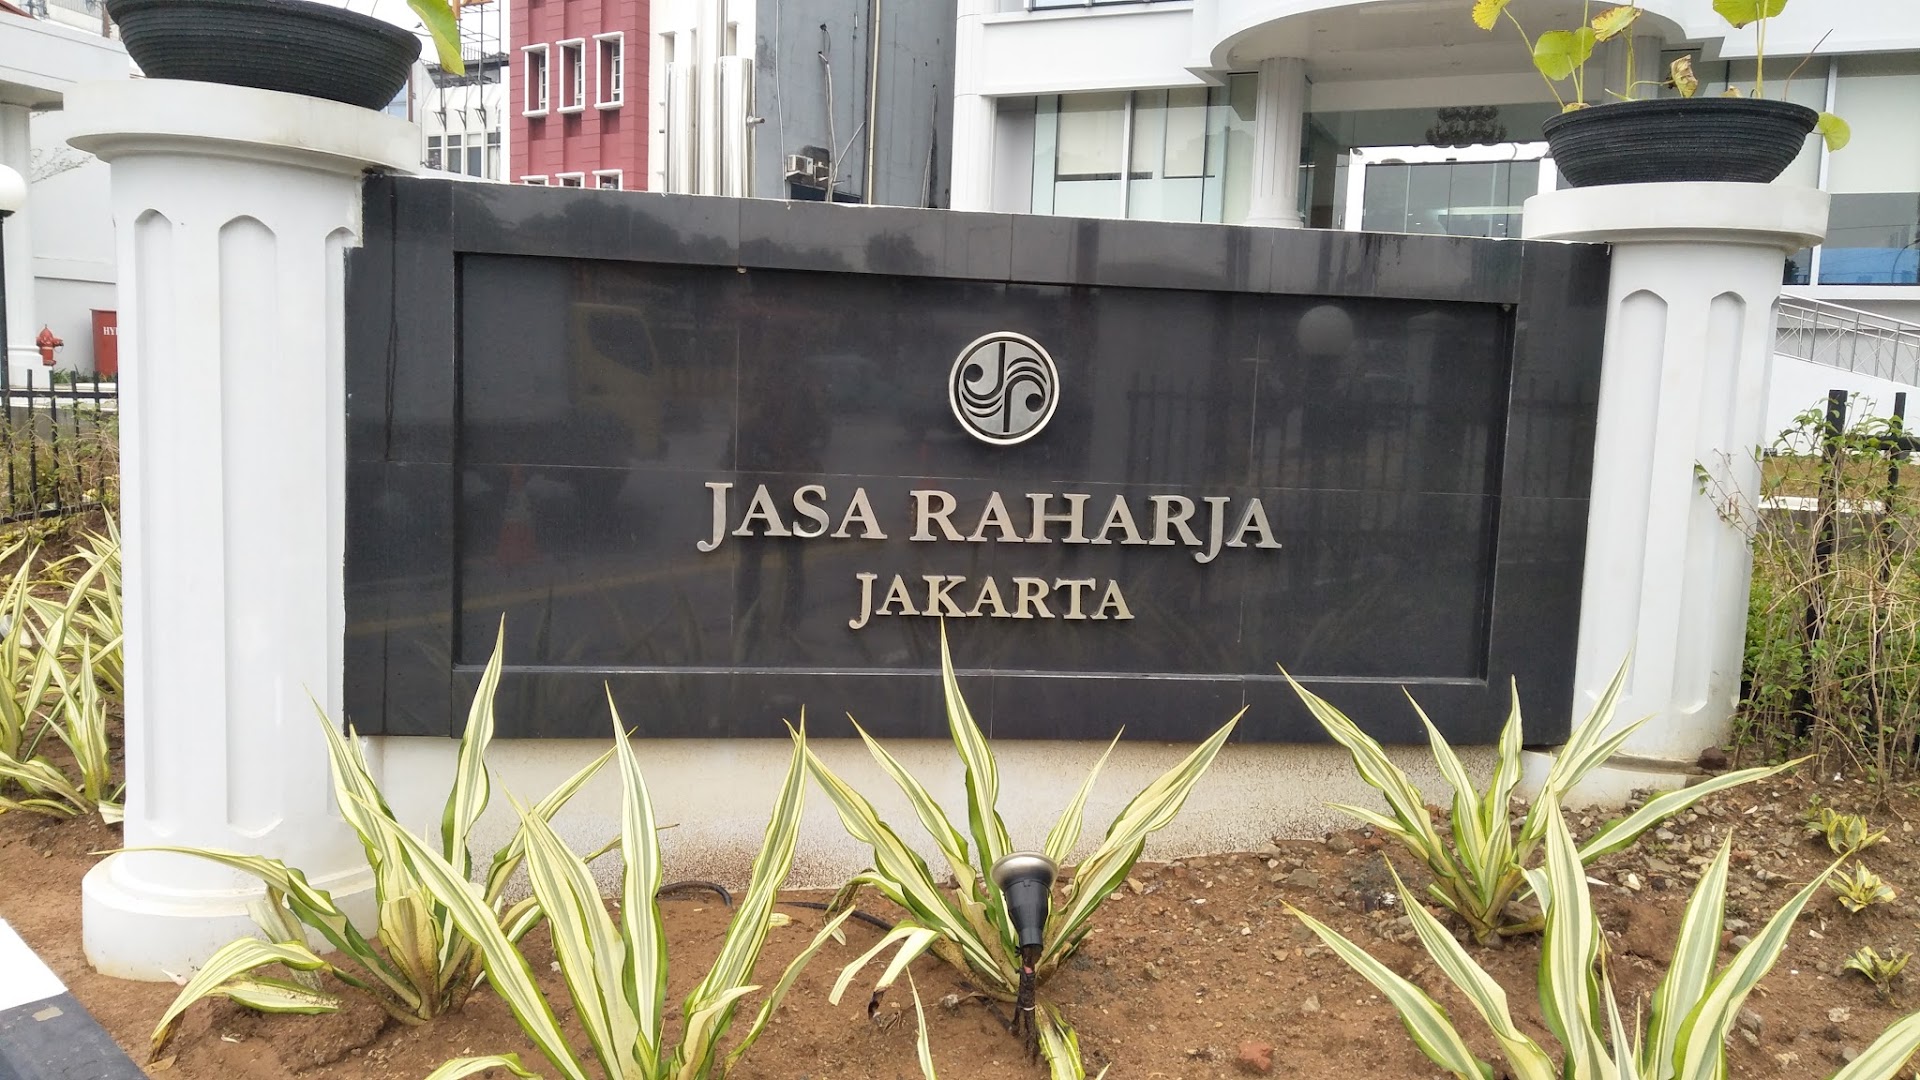 Gambar Pt Jasa Raharja Cabang Dki Jakarta